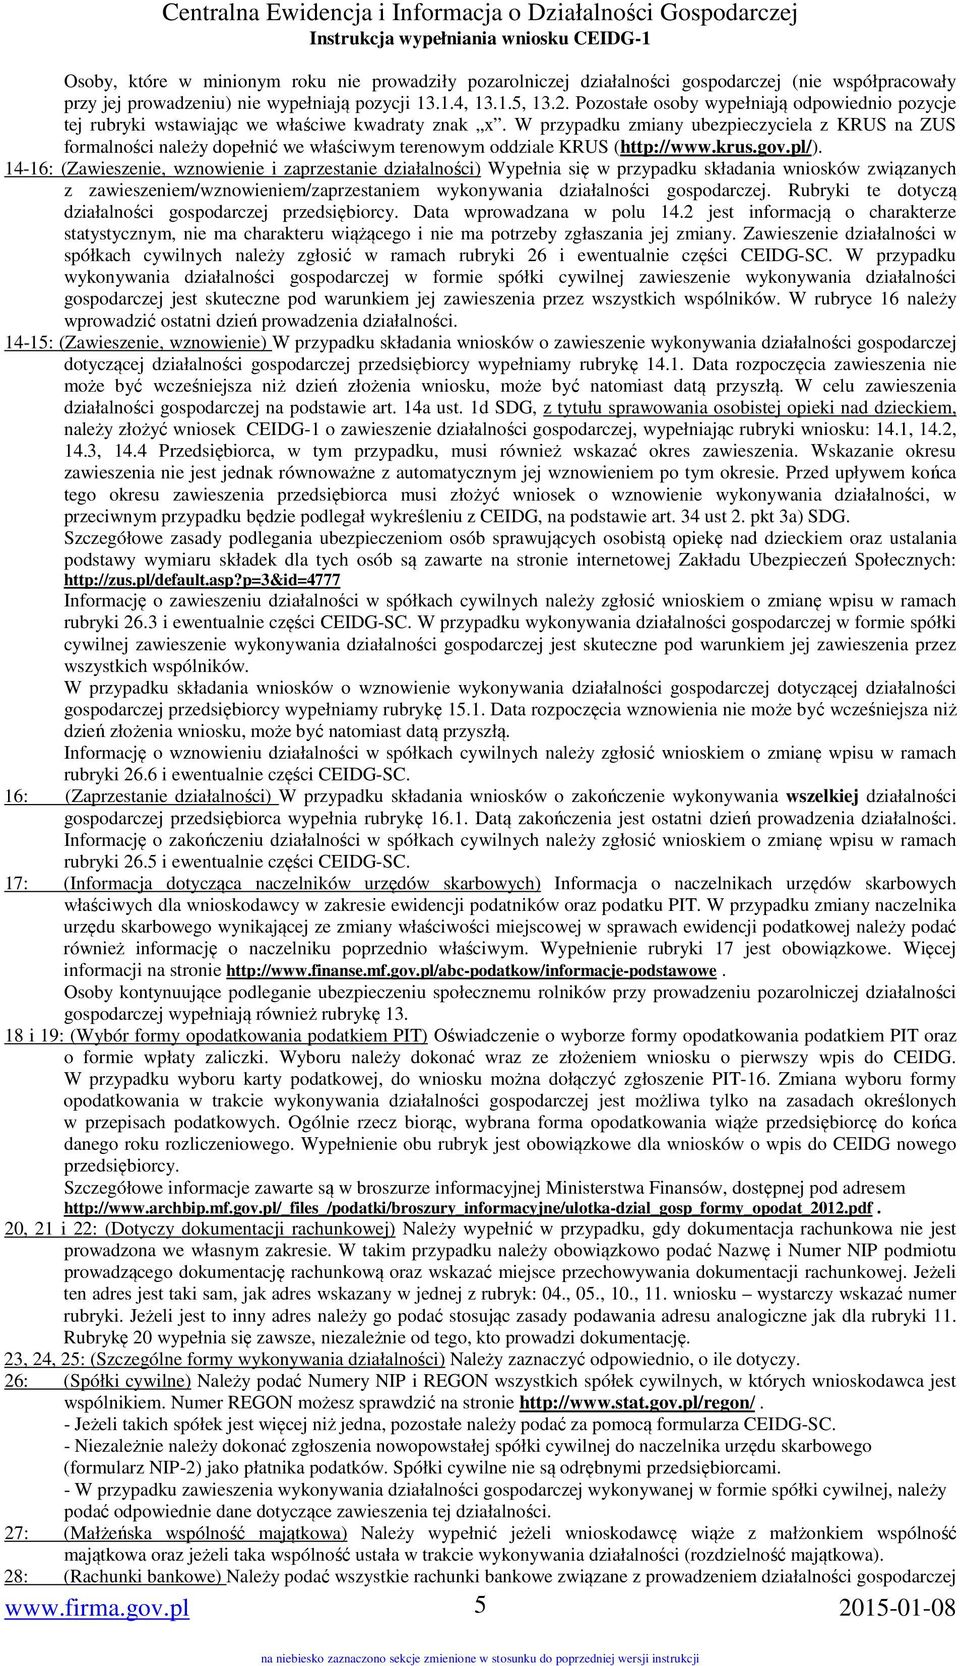 W przypadku zmiany ubezpieczyciela z KRUS na ZUS formalności należy dopełnić we właściwym terenowym oddziale KRUS (http://www.krus.gov.pl/).